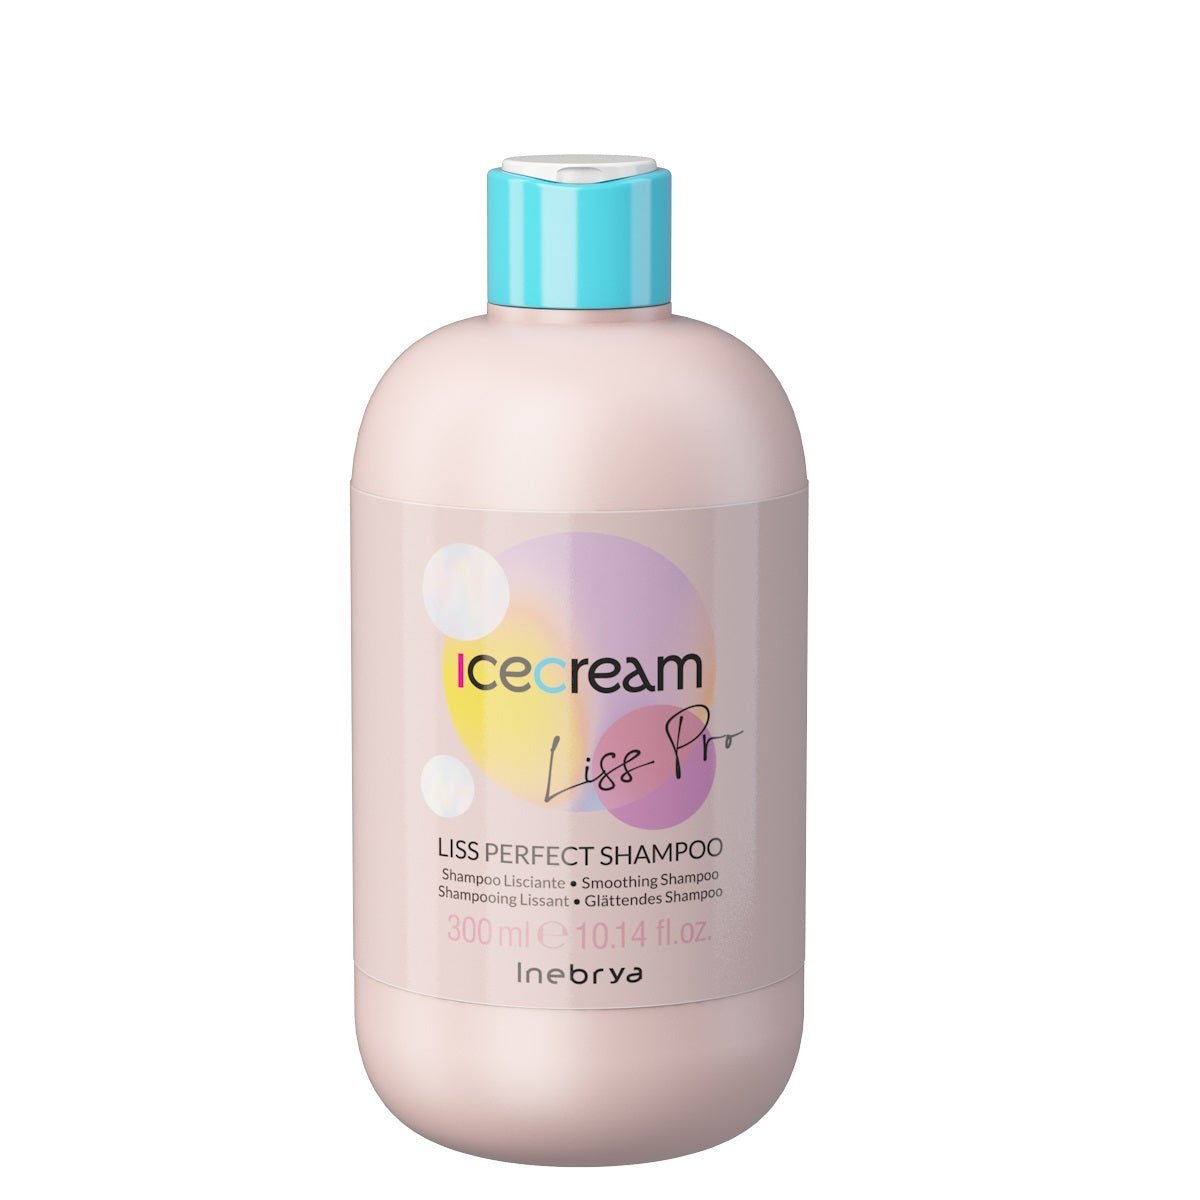 Inebrya Разглаживающий шампунь Ice Cream Liss-Pro 300мл шампунь для волос розовый бриллиант 400 мл aromako женский шампунь блеск и гладкость для вьющихся и непослушных волос